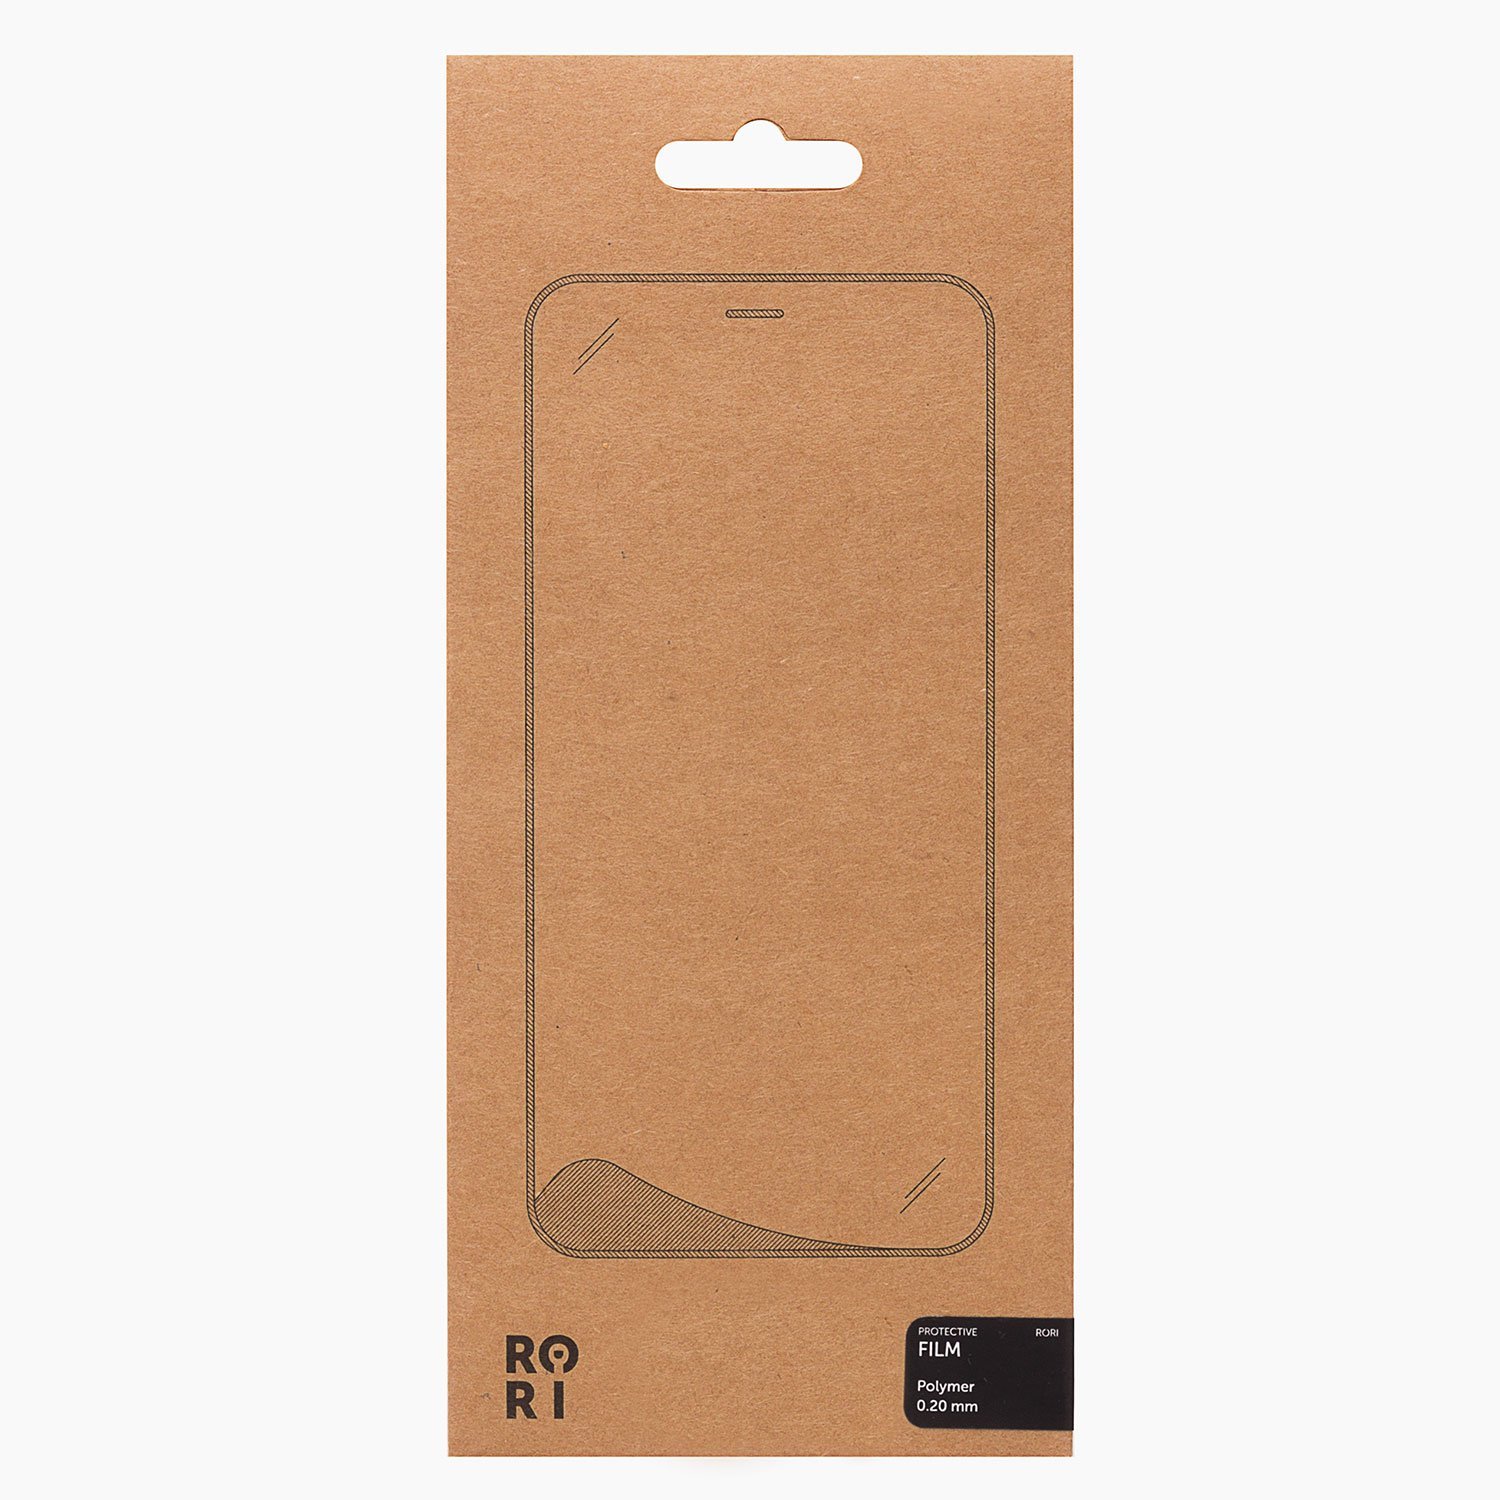 Защитная пленка Rori Polymer для экрана смартфона Apple iPhone 6 Plus/6S Plus, поверхность матовая, белая рамка (126620)